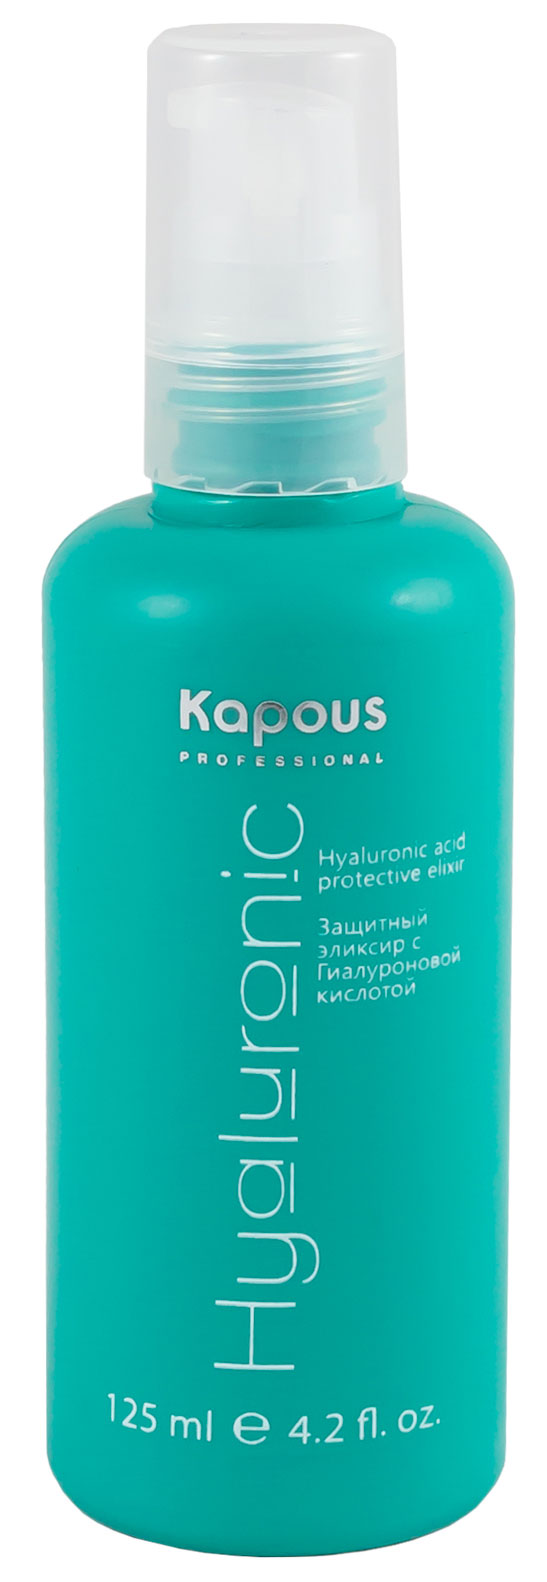 Kapous hyaluronic acid защитный эликсир с гиалуроновой кислотой 125 мл